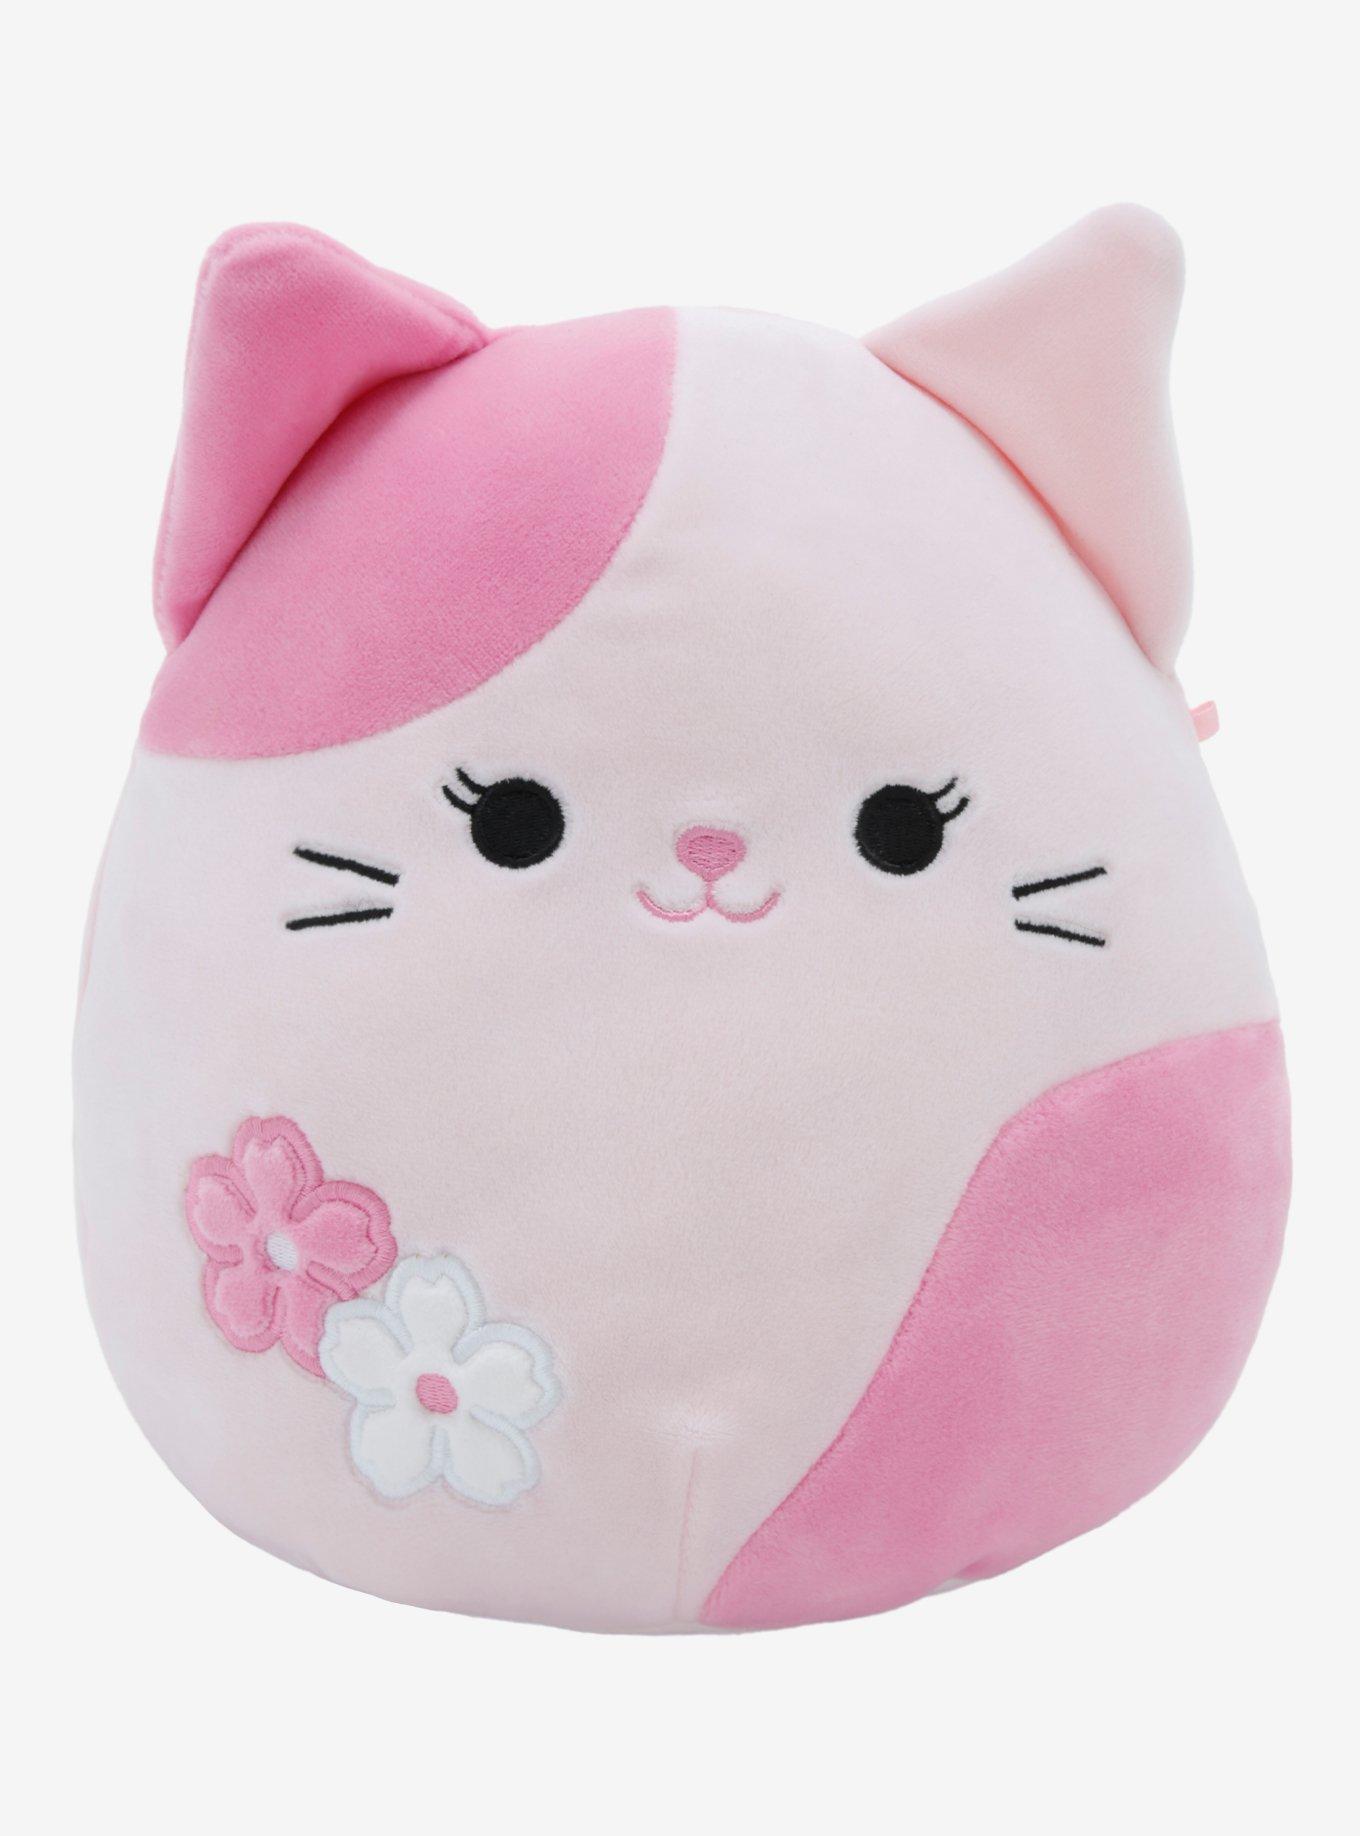 Squishmallows Sakura Cat Plush Hot Topic Exclusive